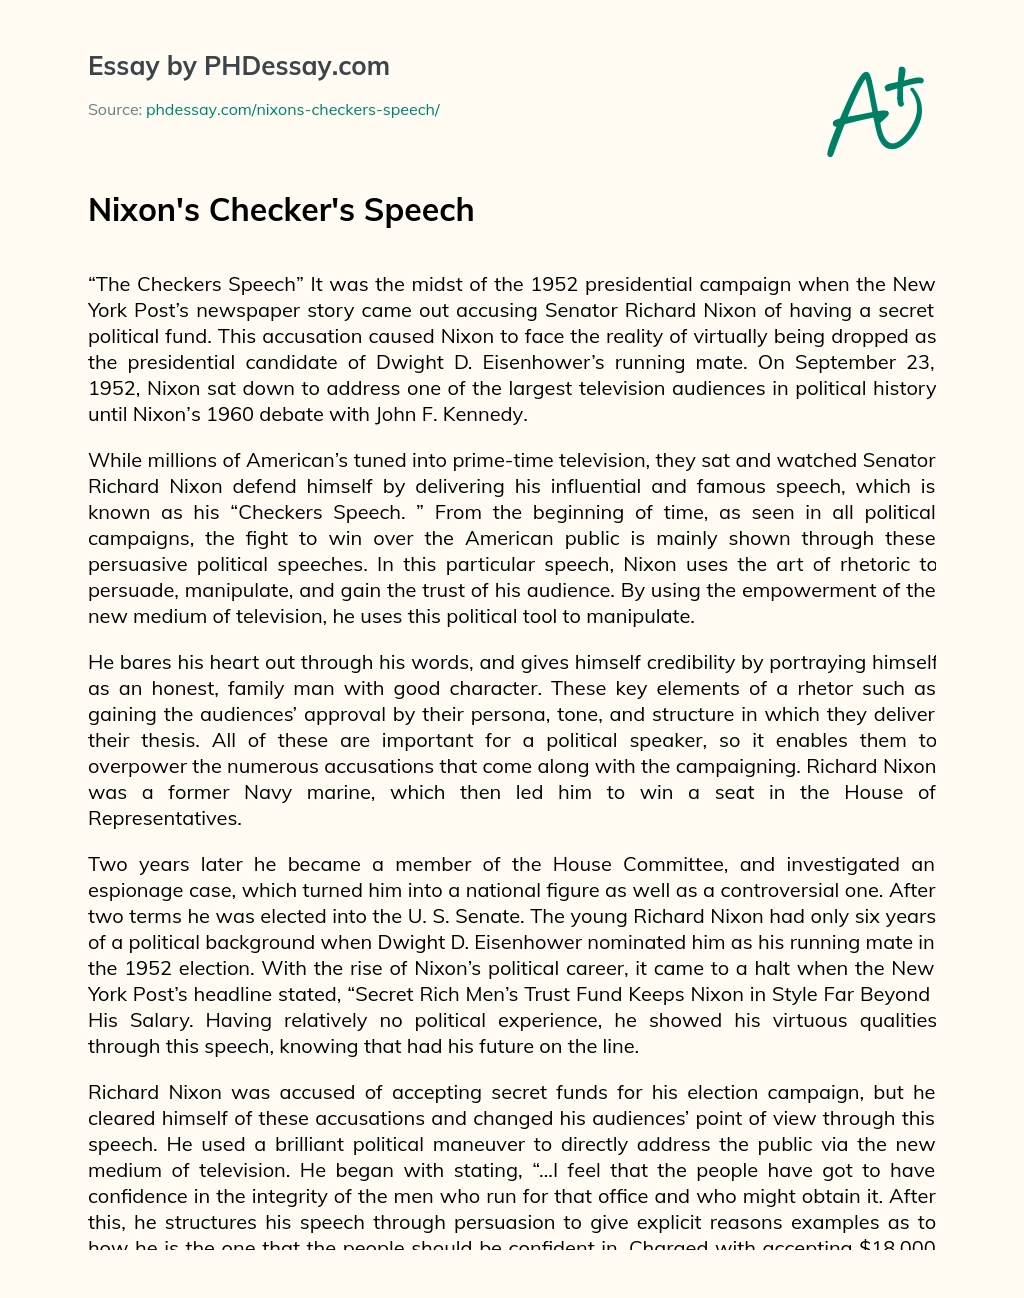 Nixon’s Checker’s Speech essay